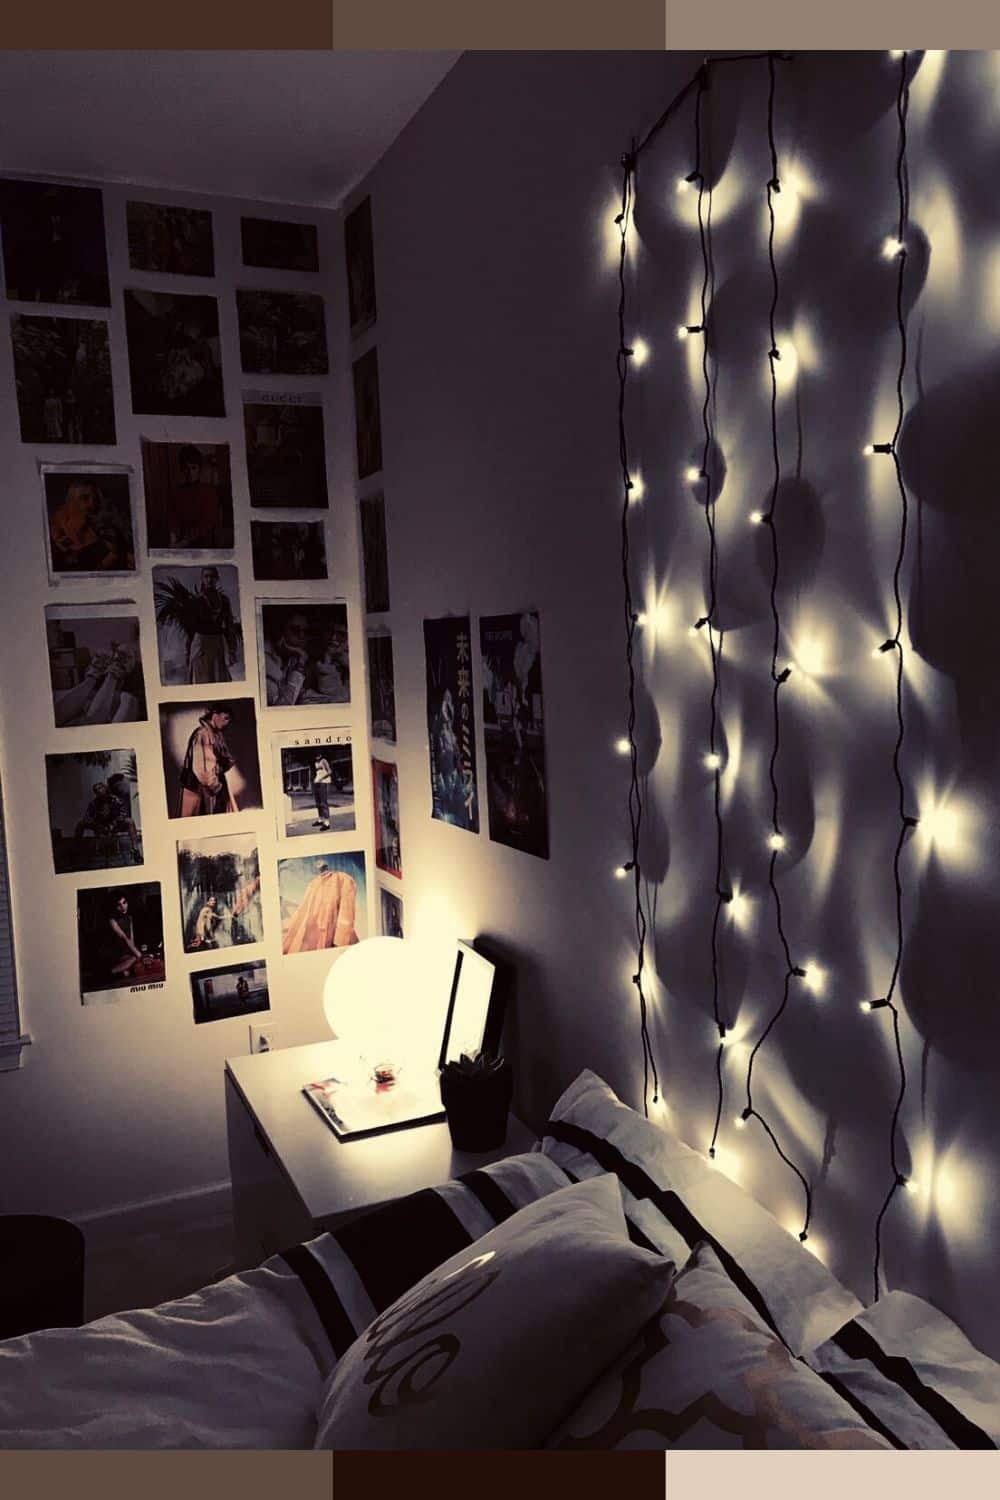 tumblr aesthetic room